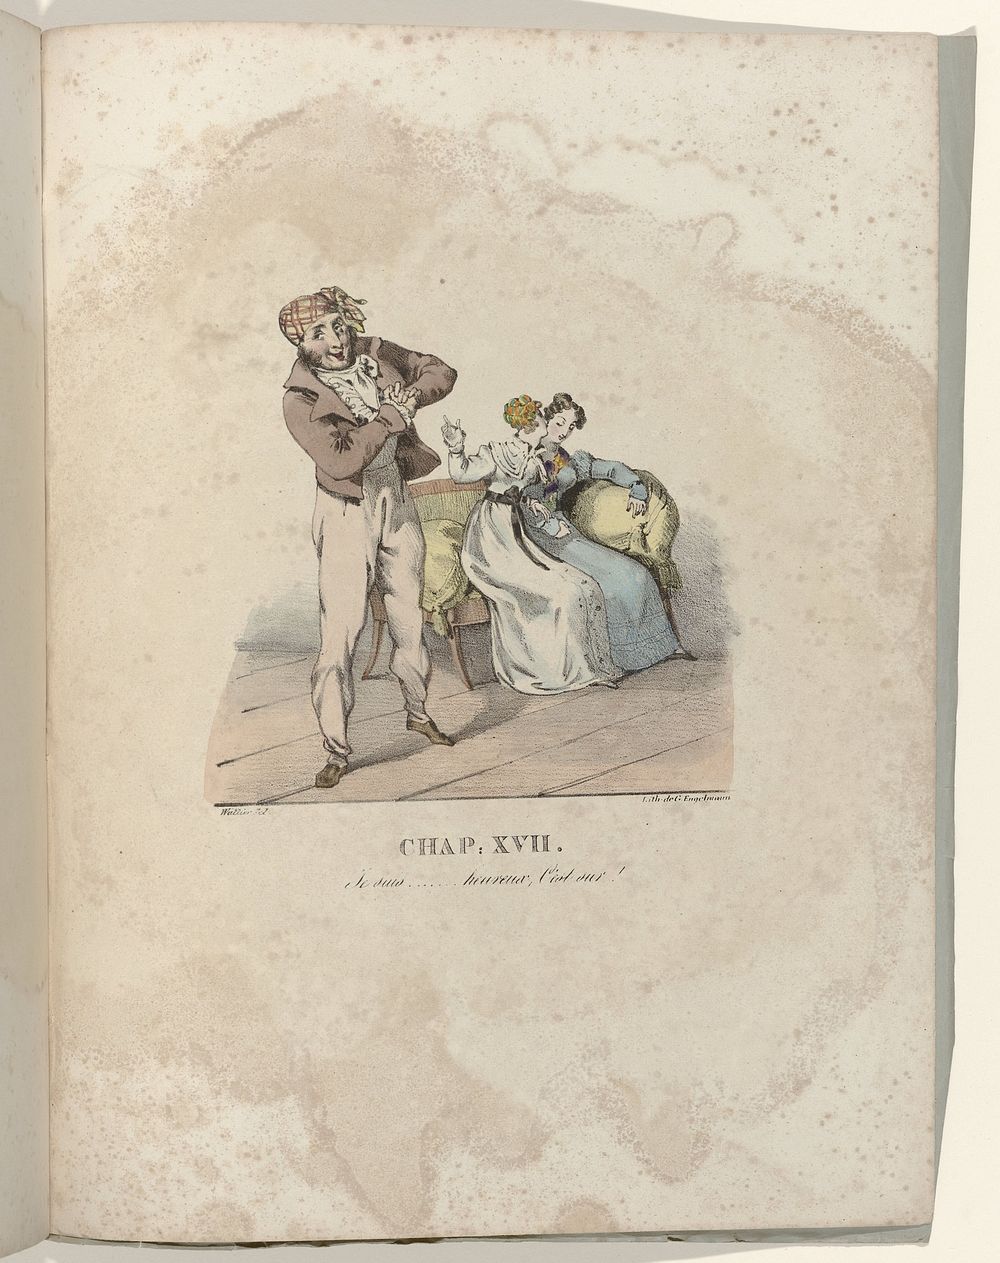 La Né d'une Modiste, 1828 : Chap. XVII: Je suis (...)heureux, C'est sur ! (c. 1828) by Gottfried Engelmann and Wattier